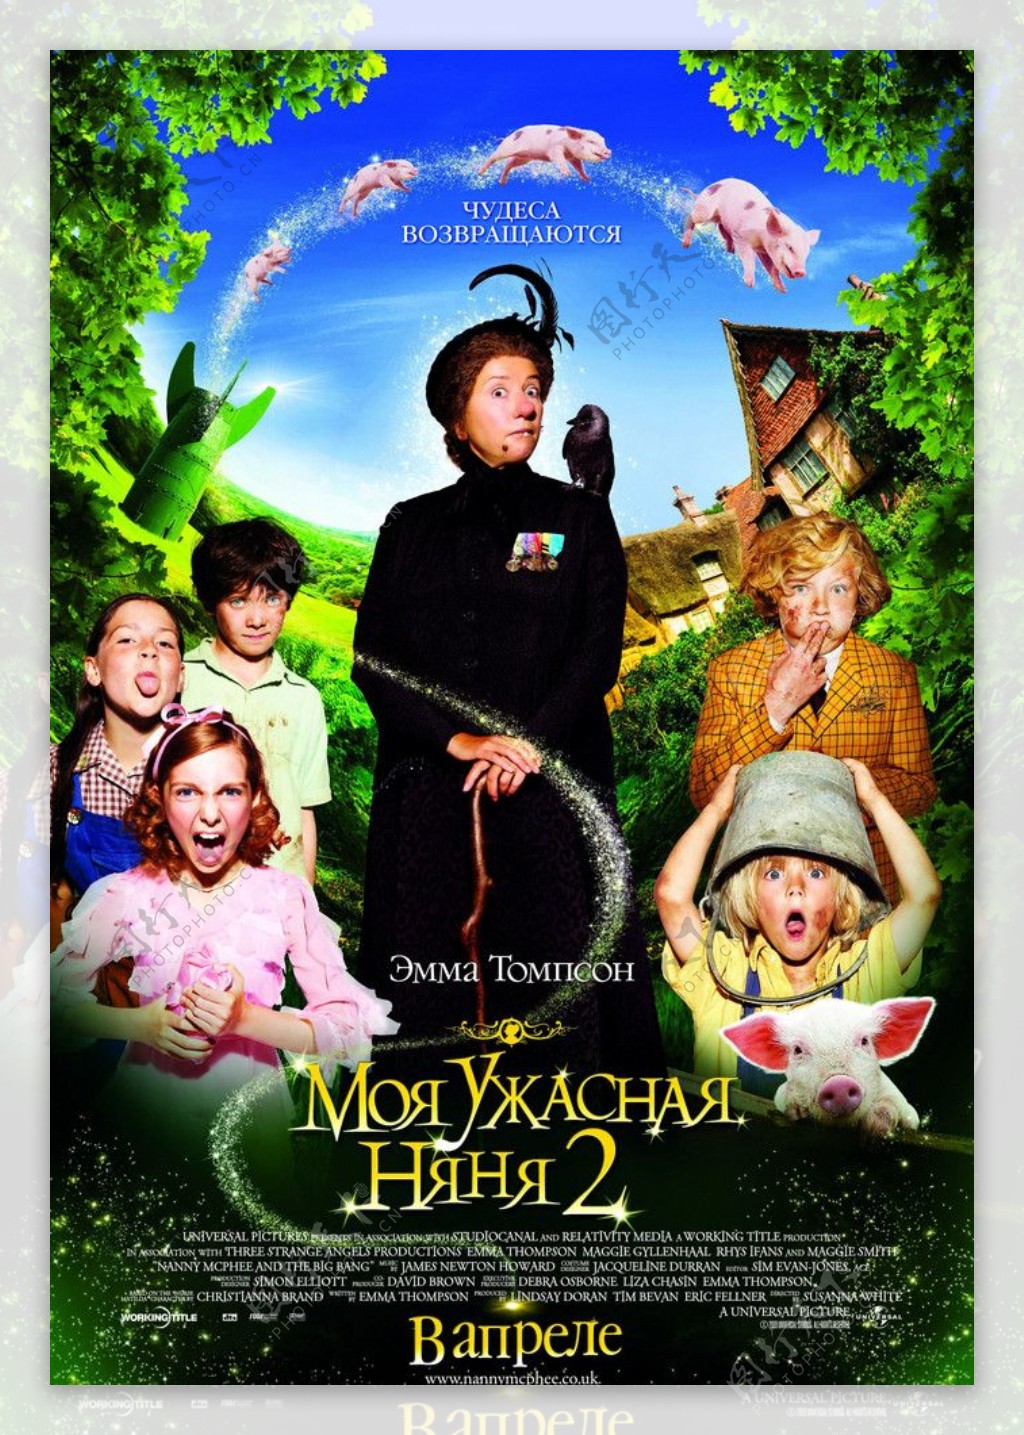 魔法保姆麦克菲2高清原版电影海报图片